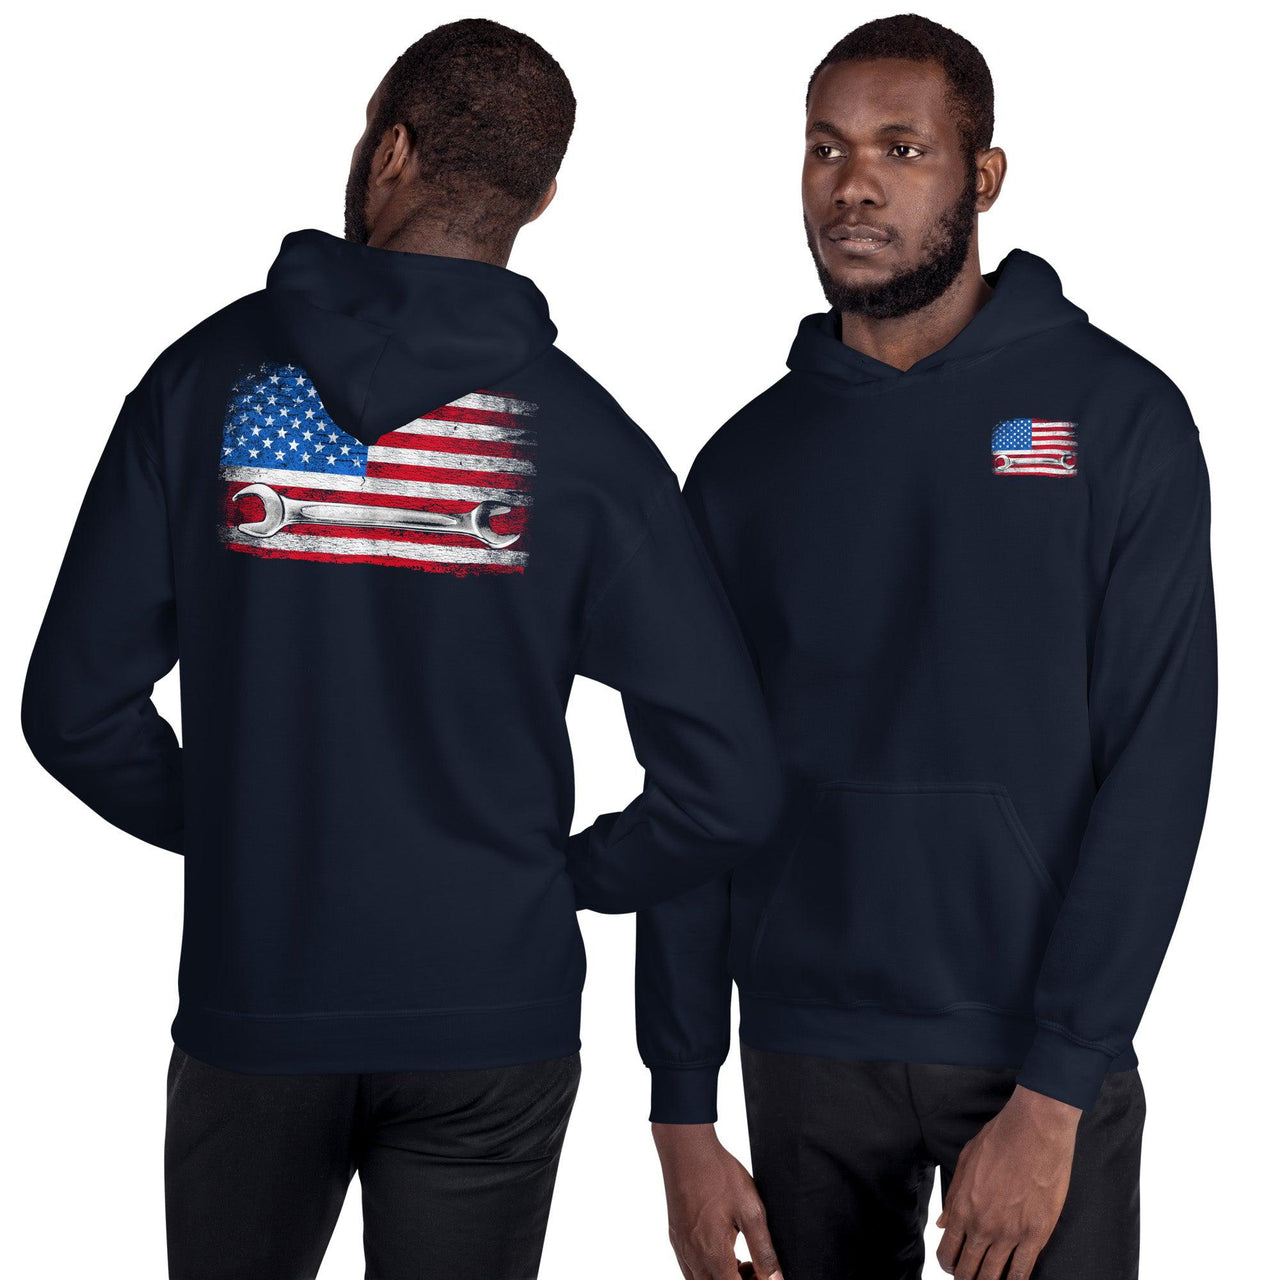 American Flag Mechanic Hoodie Sweatshirt modeled in navy